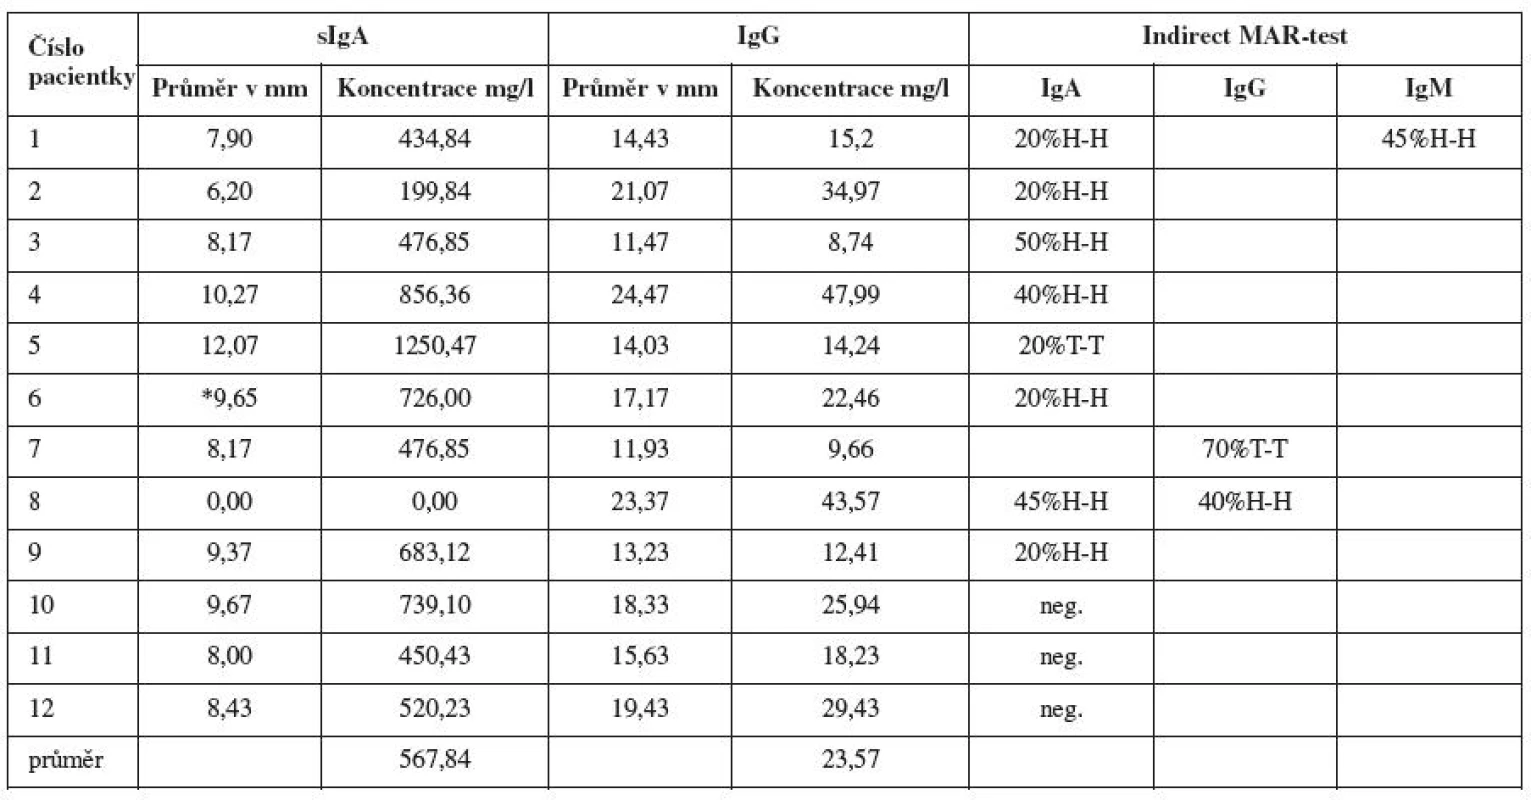 Souhrnná tabulka výsledků - celkové lokální sIgA a IgG, antispermatozoidální aktivita vyjádřená nepřímým MAR-testem